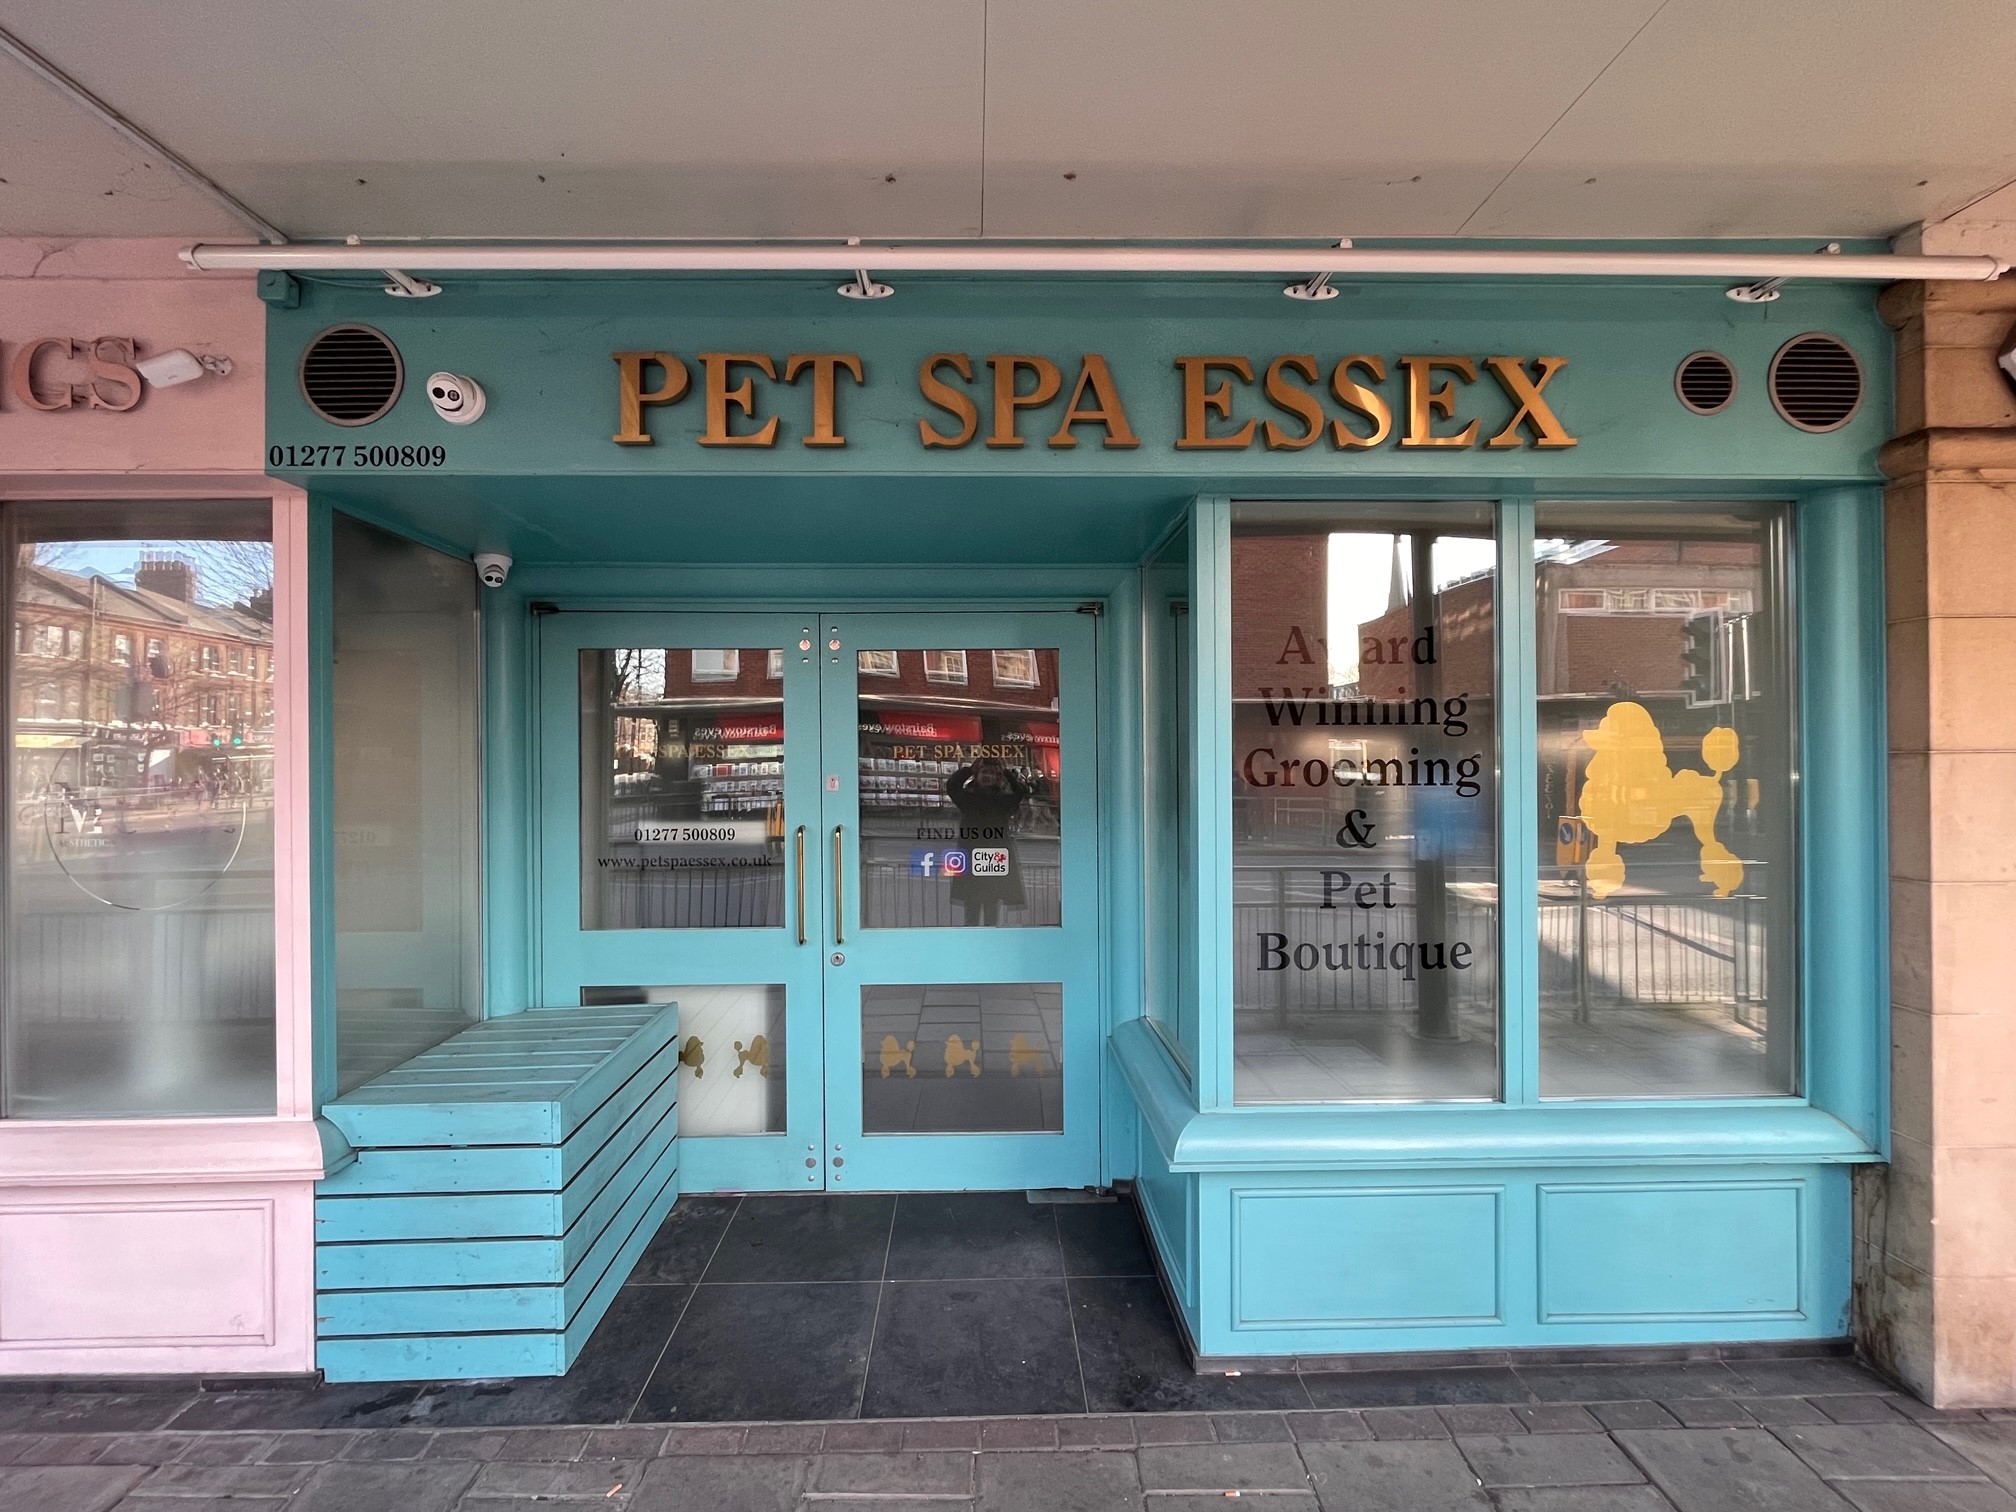 Pet Spa Essex